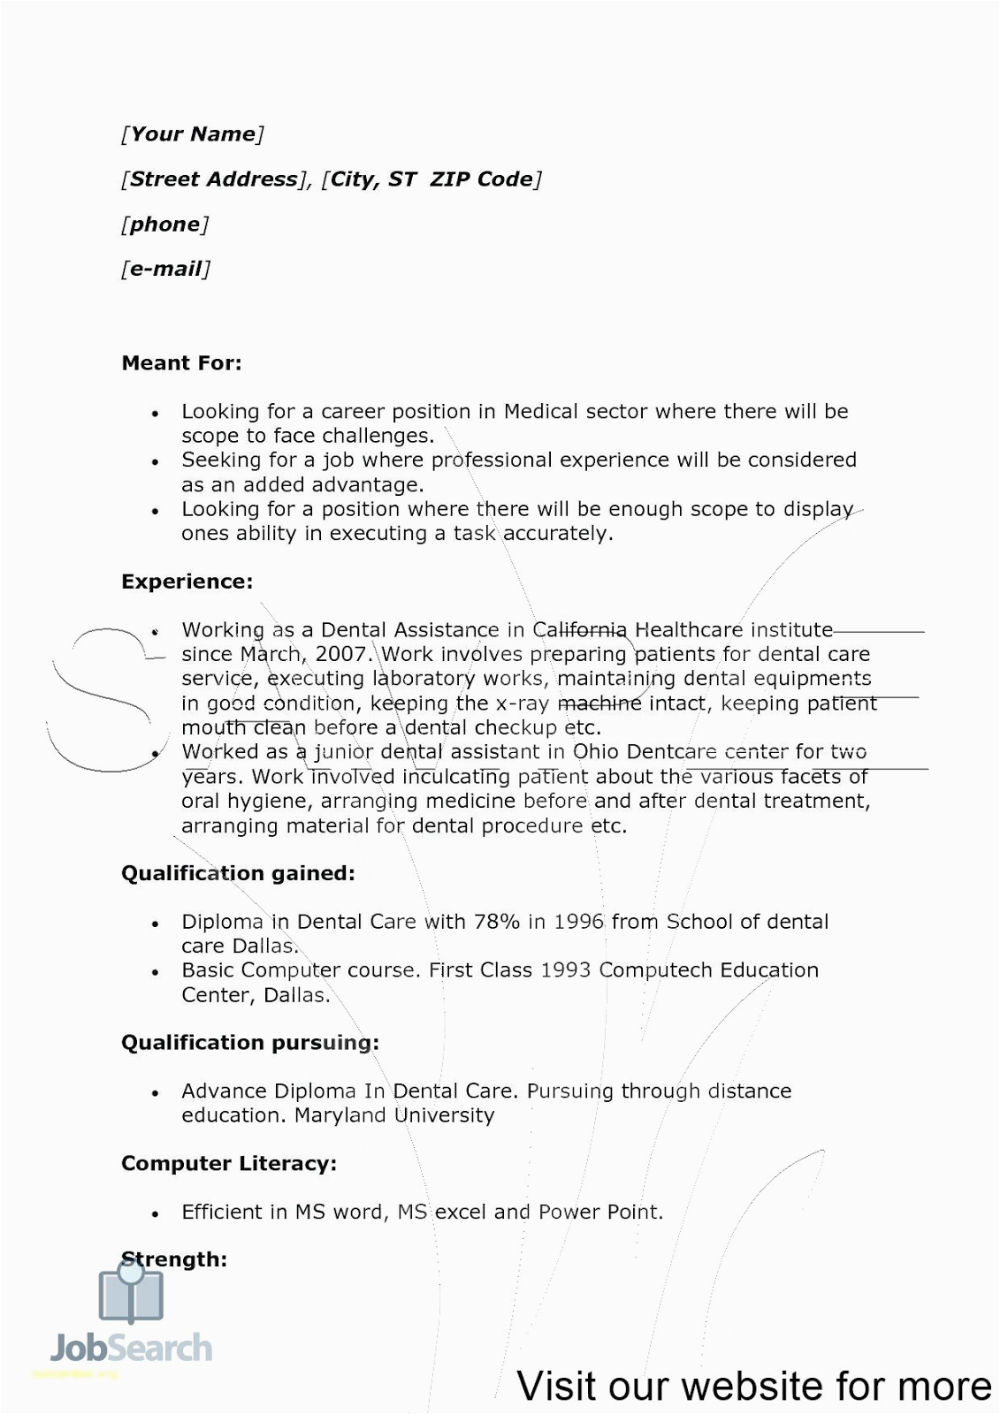 Sample Resume for Medical Transcriptionist Fresher Medical Transcription Resume Examples Entry Level Medical Transcription